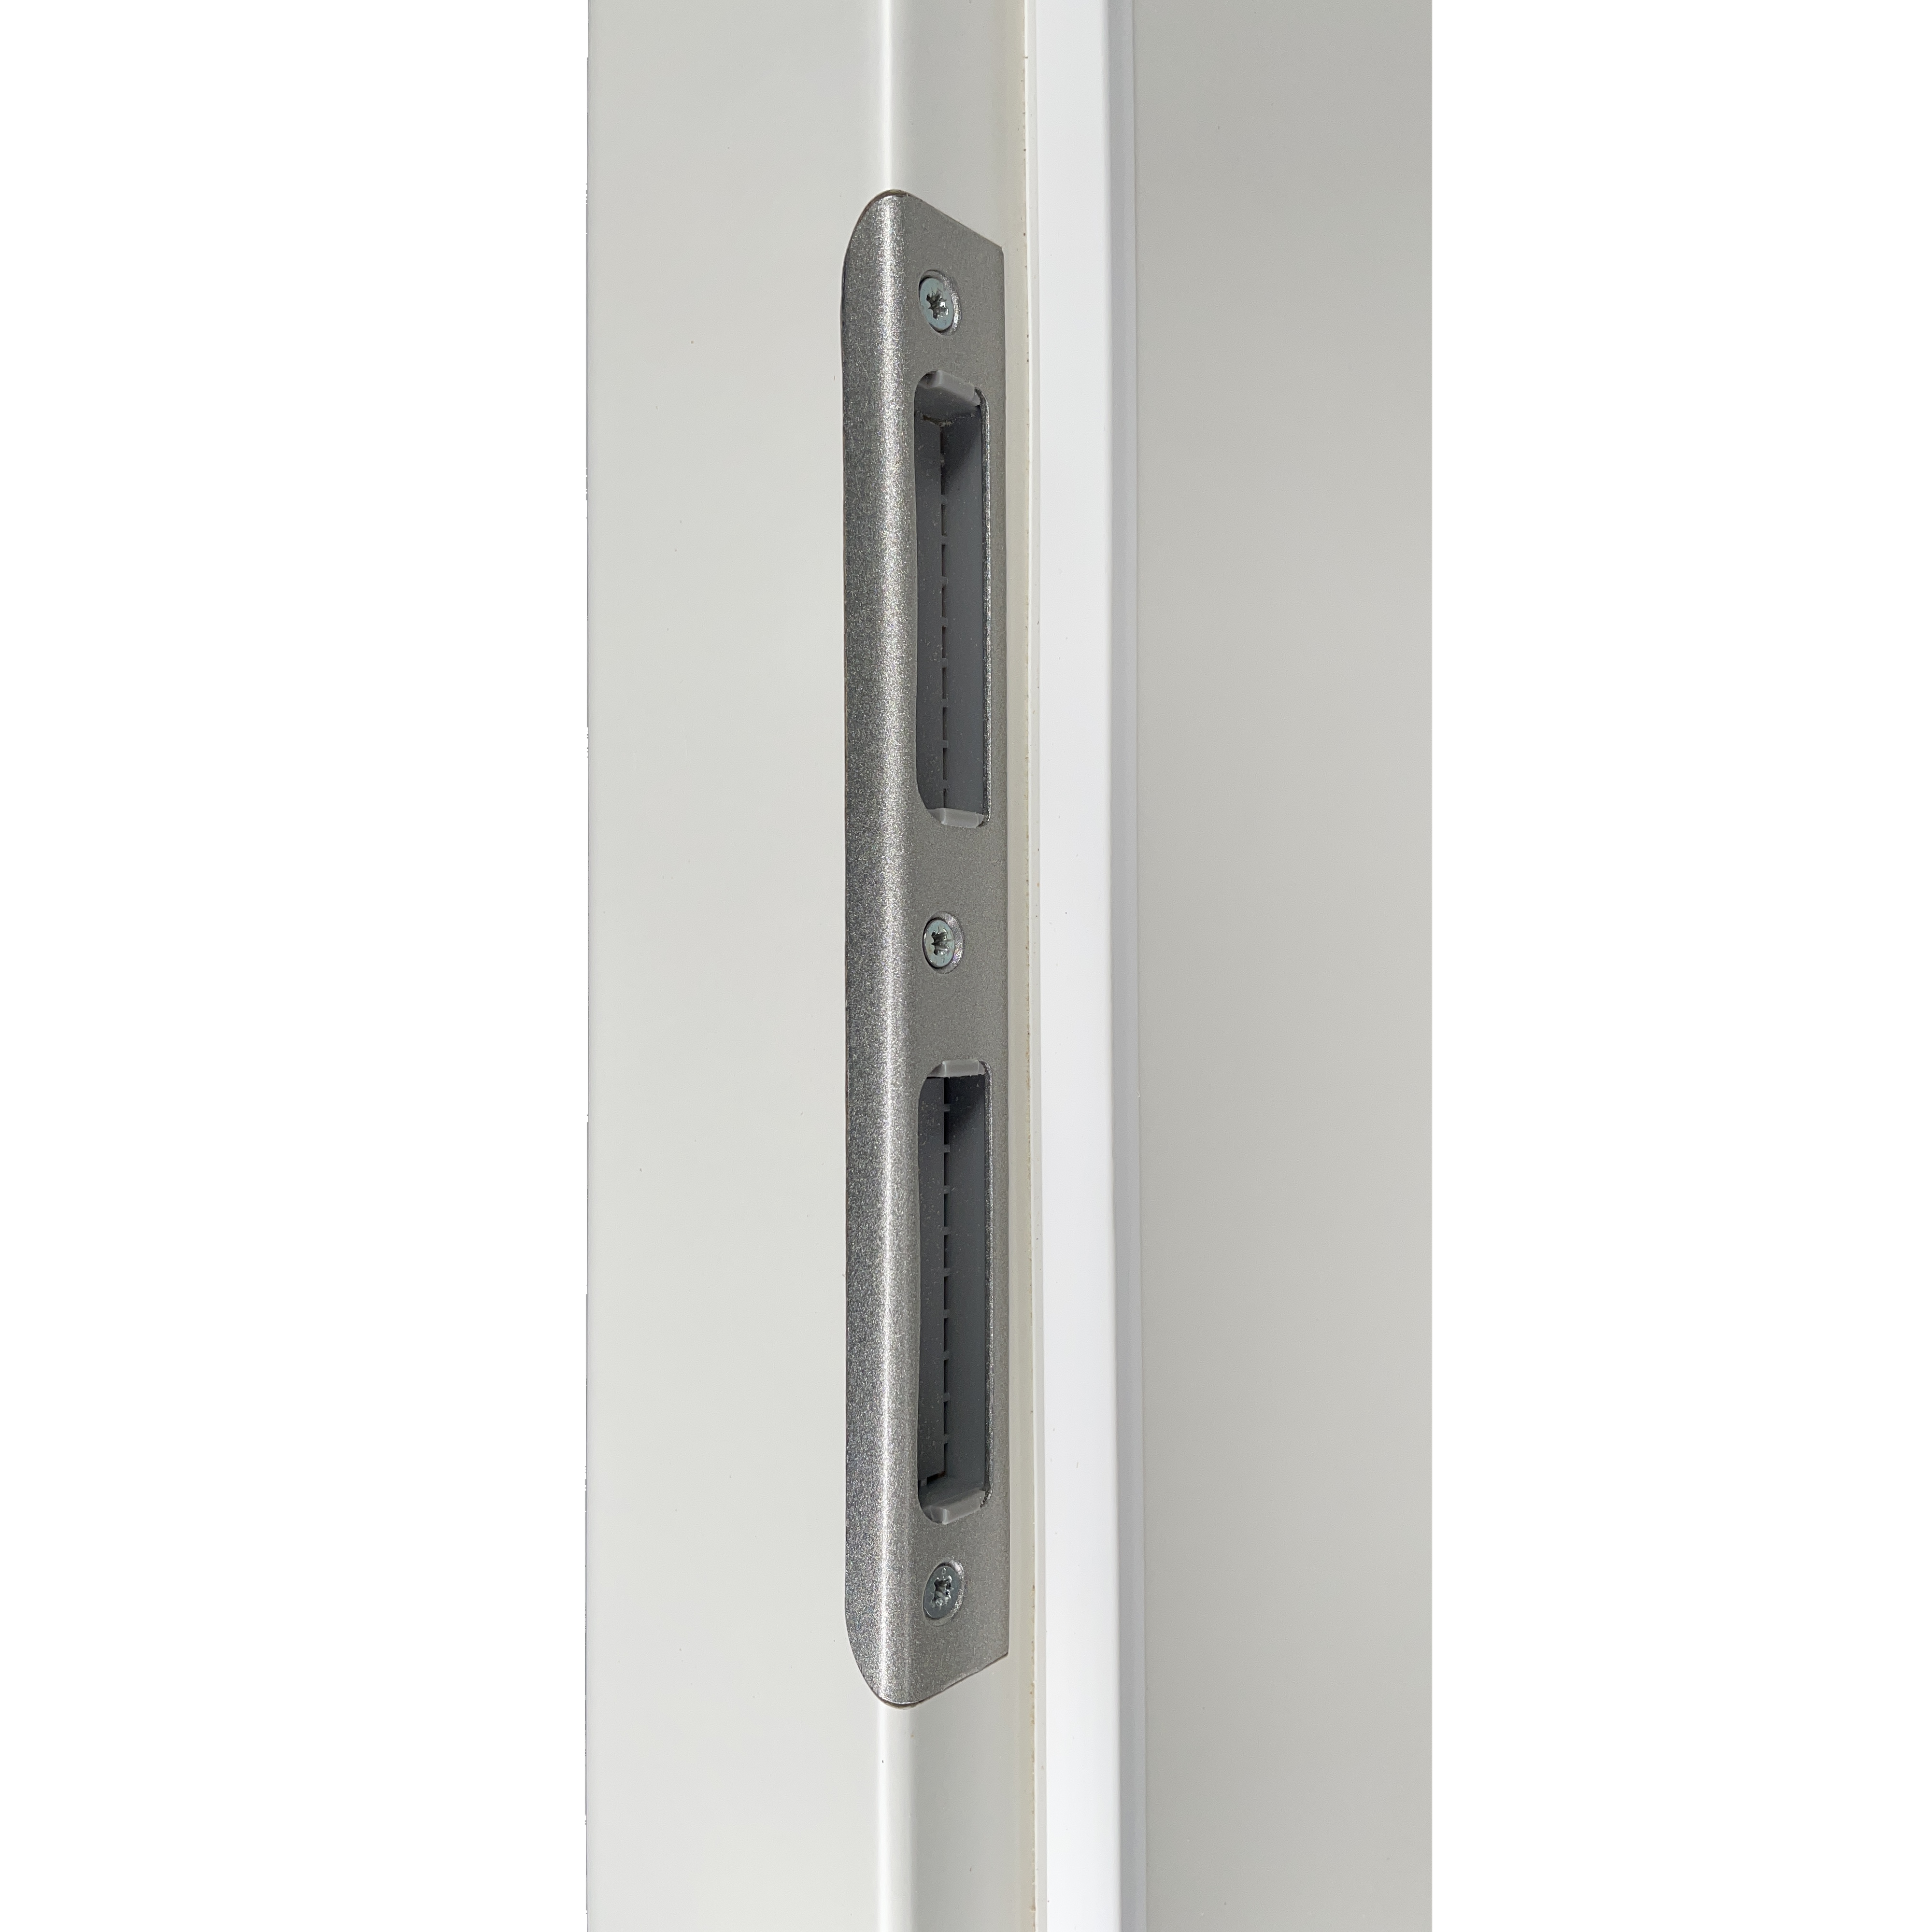 Zimmertür mit Zarge soft-weiß Stiltür mit 4 Kassetten und Lichtausschnitt Rundkante - Modell Stiltür K41LA2